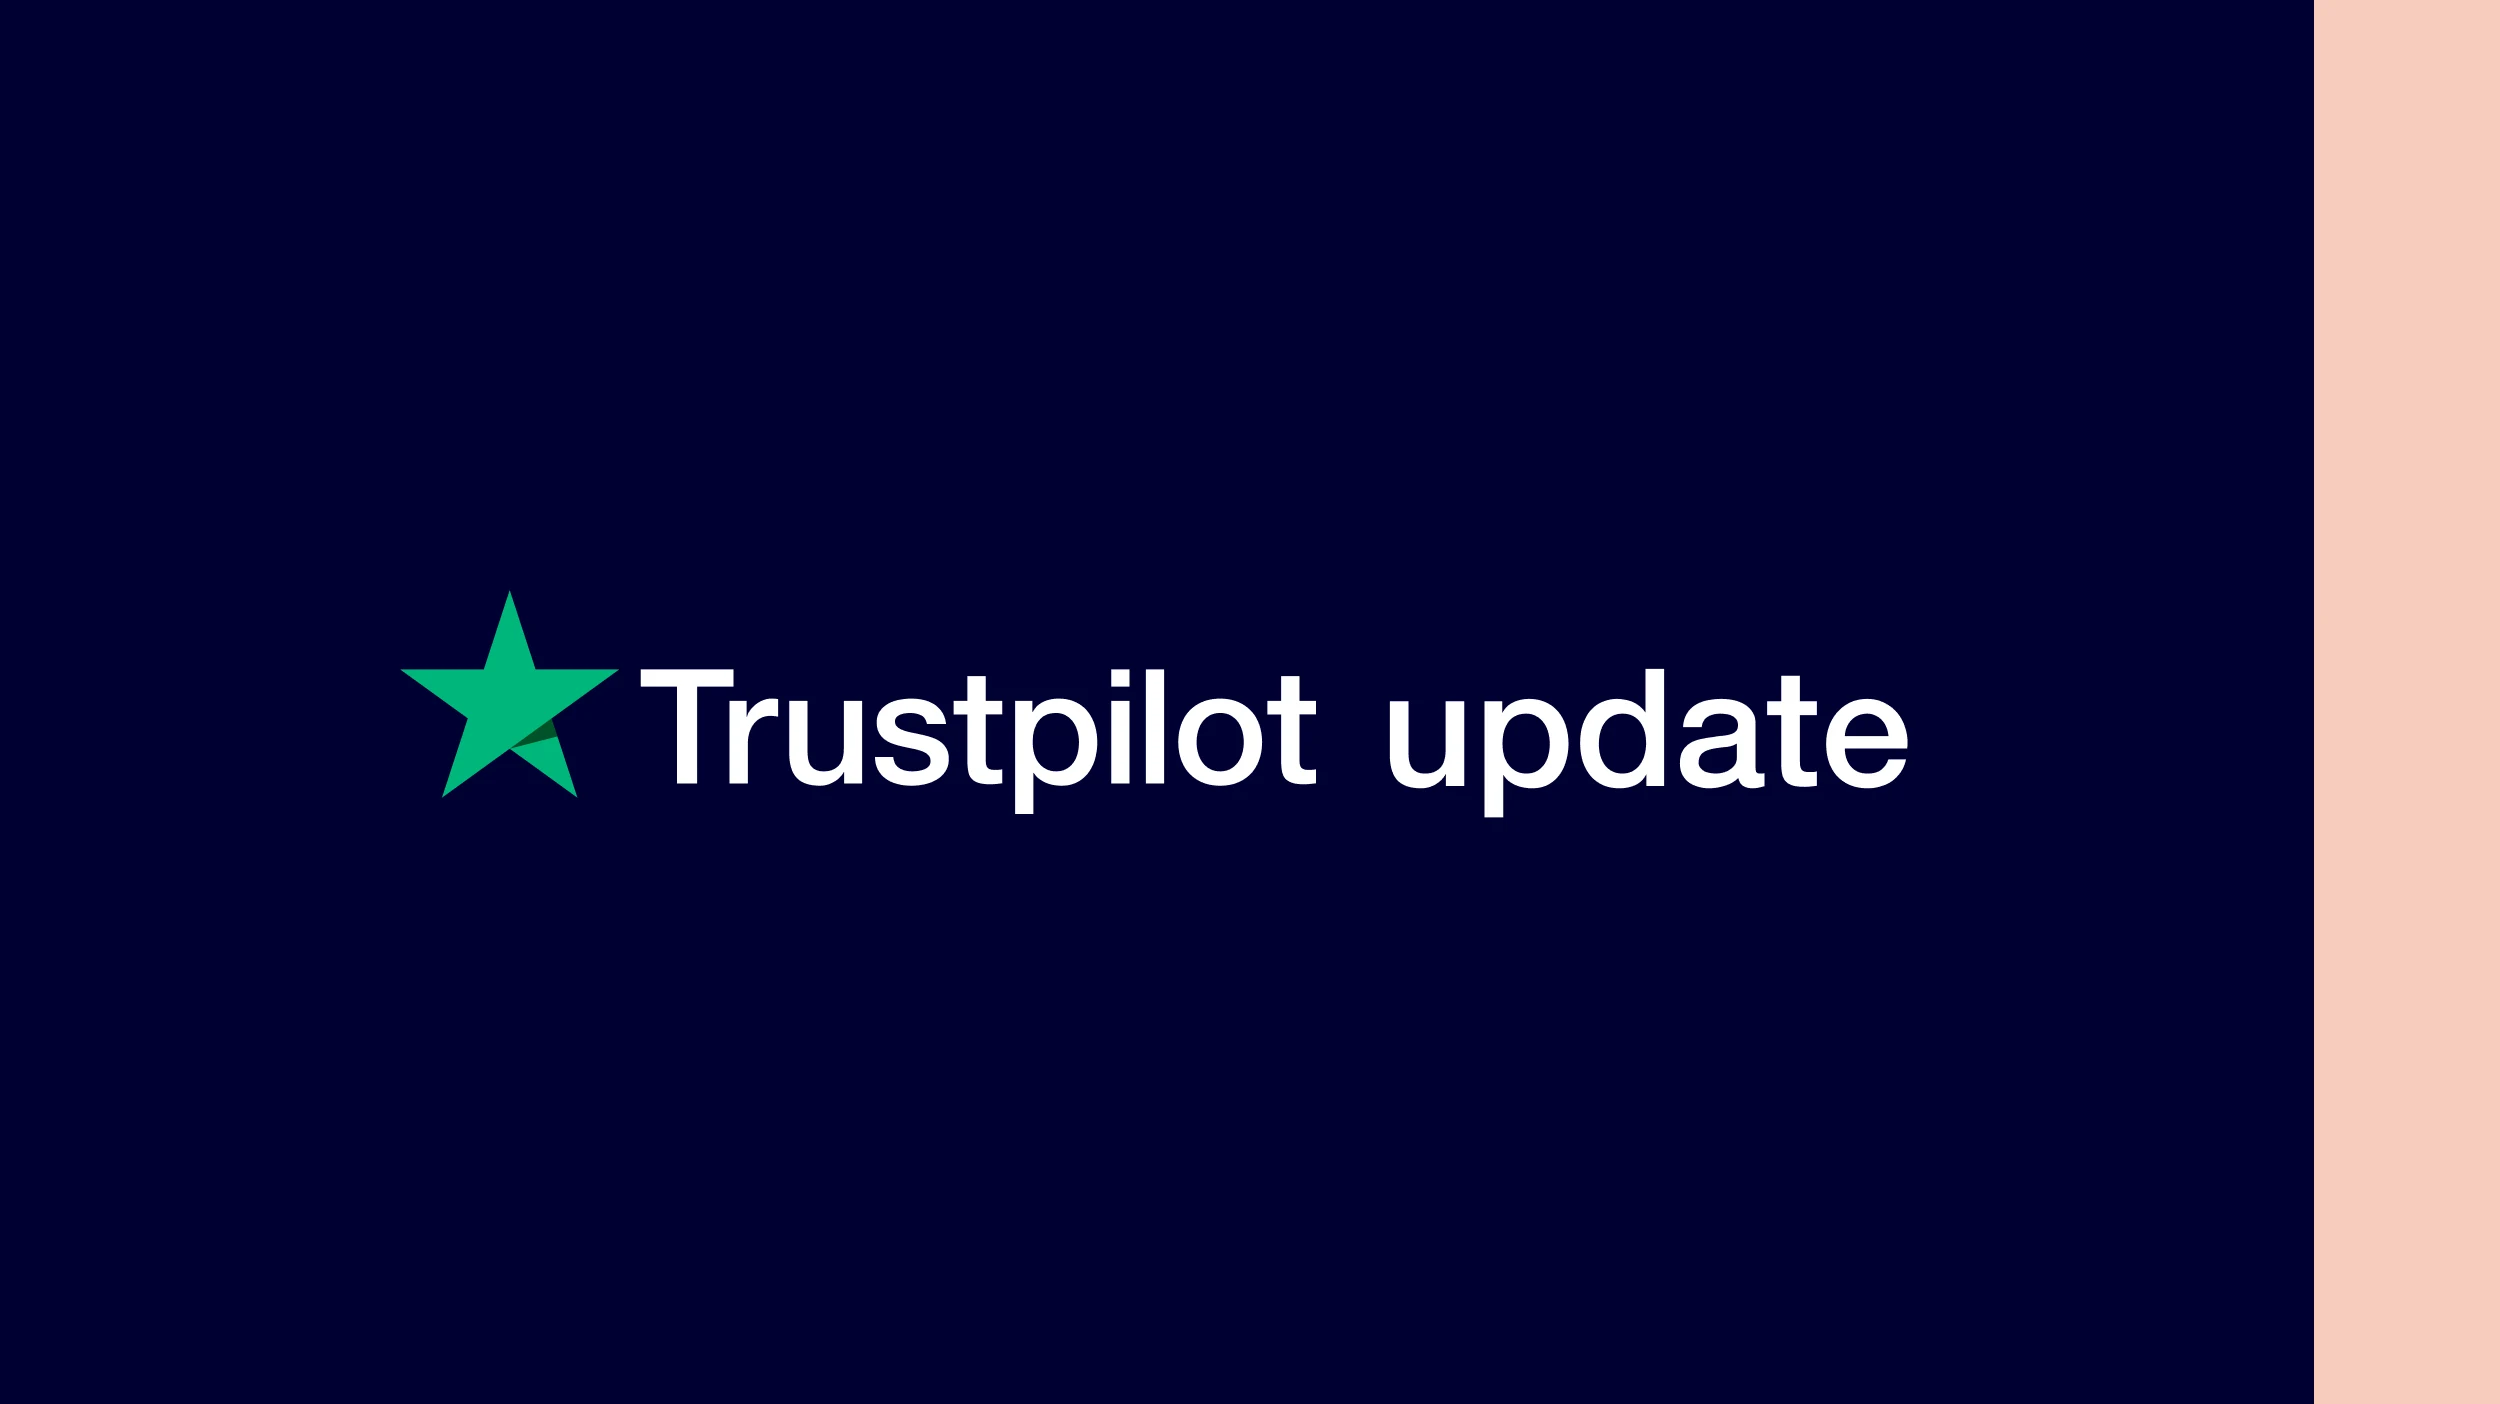 product updates Trustpilot 2019